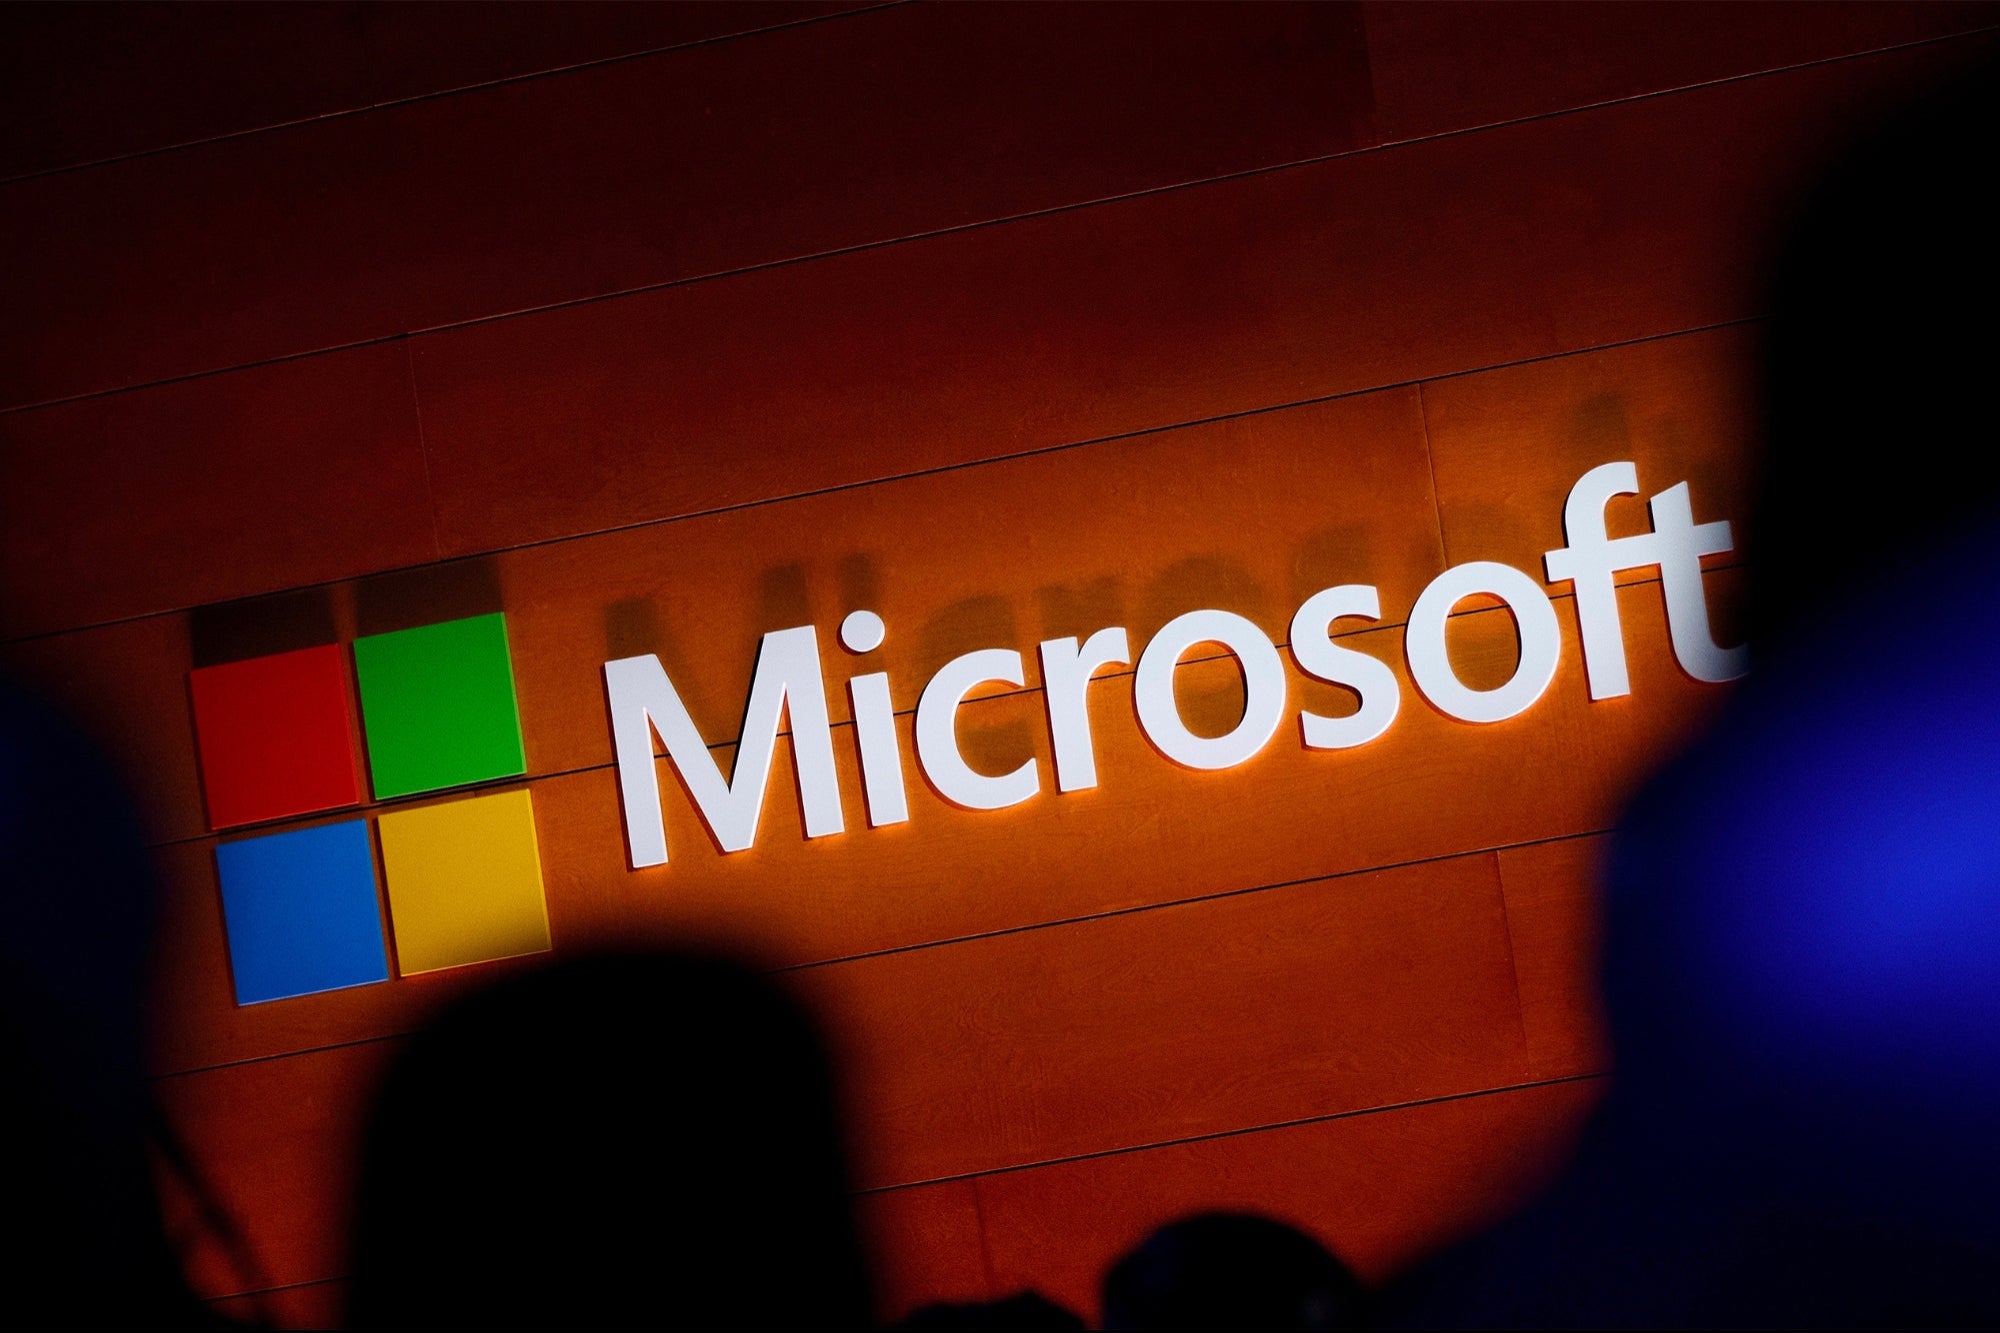 Un ingeniero despedido de Microsoft fue condenado a 9 años de prisión